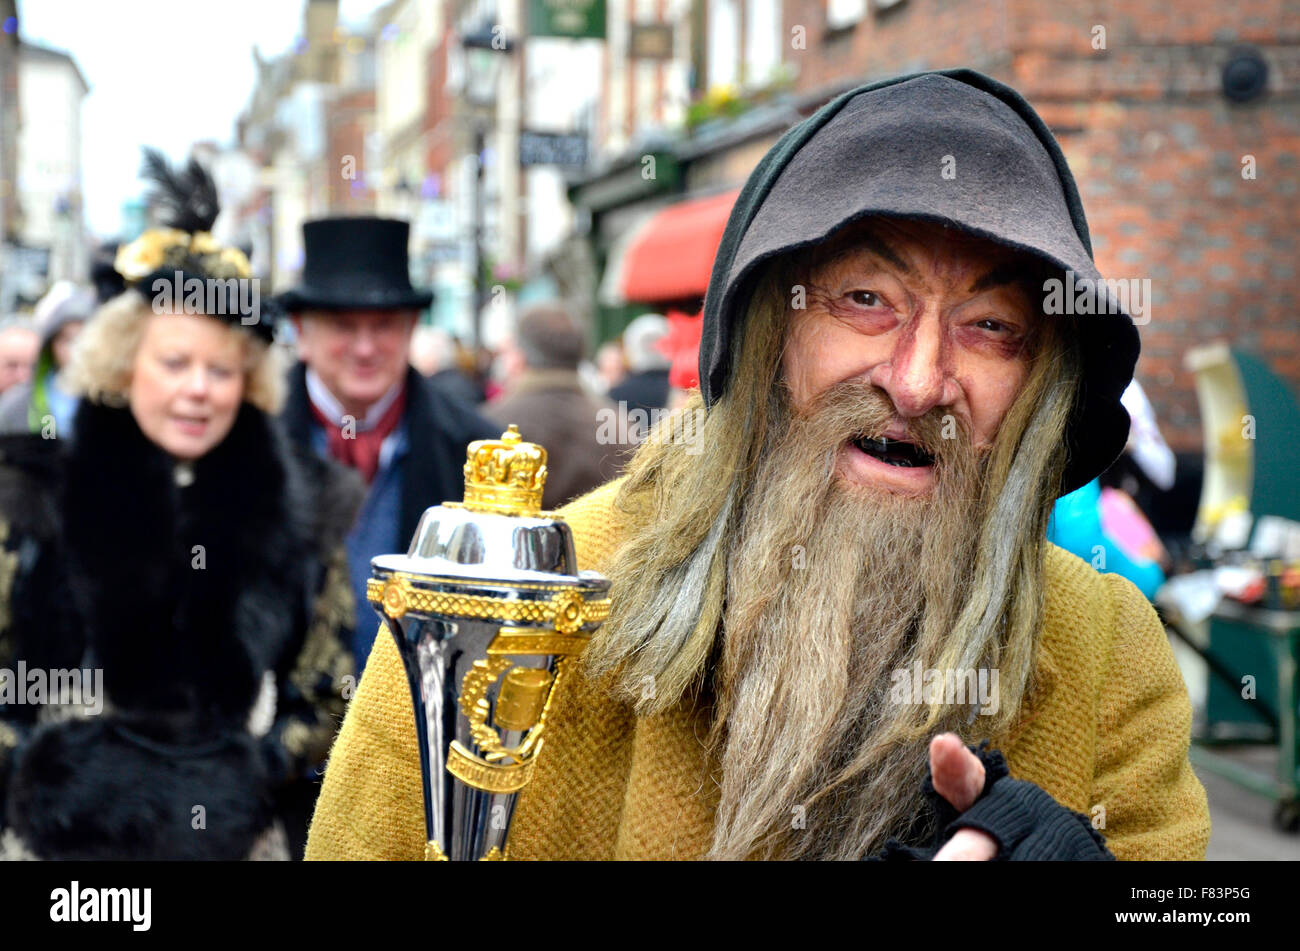 Rochester, Kent, 5. Dezember. Der erste Tag des jährlichen Dickens Christmas Festival am Wochenendes beginnt mit Paraden auf der High Street, Musik und Unterhaltung für die Tausende von Besuchern - mit einigen Kunstschnee Credit: PjrNews/Alamy Live News Stockfoto